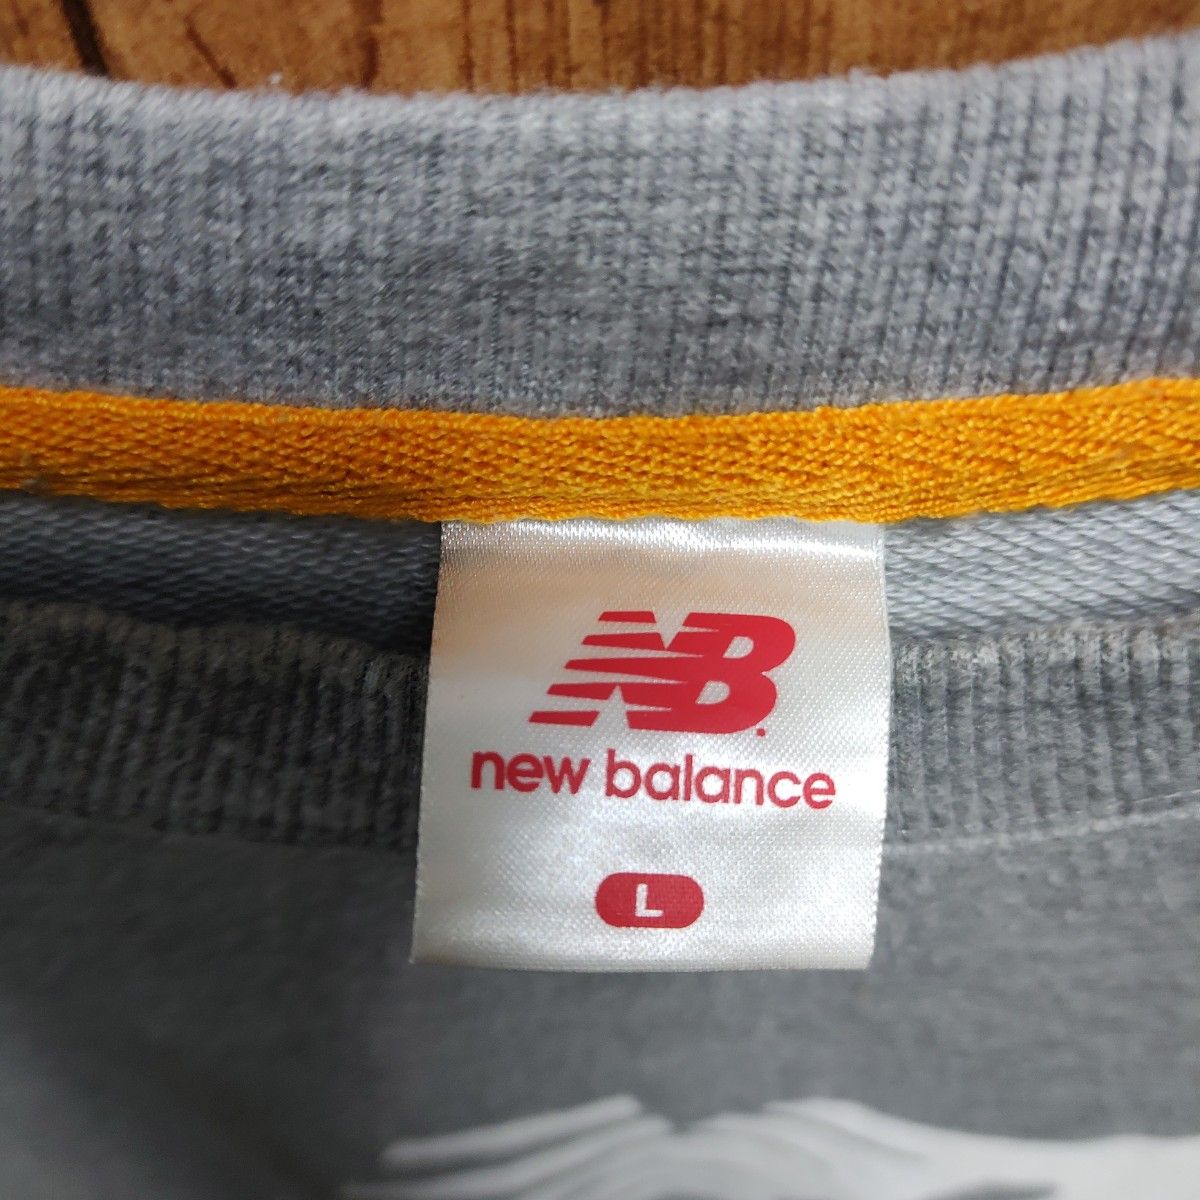 New Balance ニューバランス スウェット トレーナー